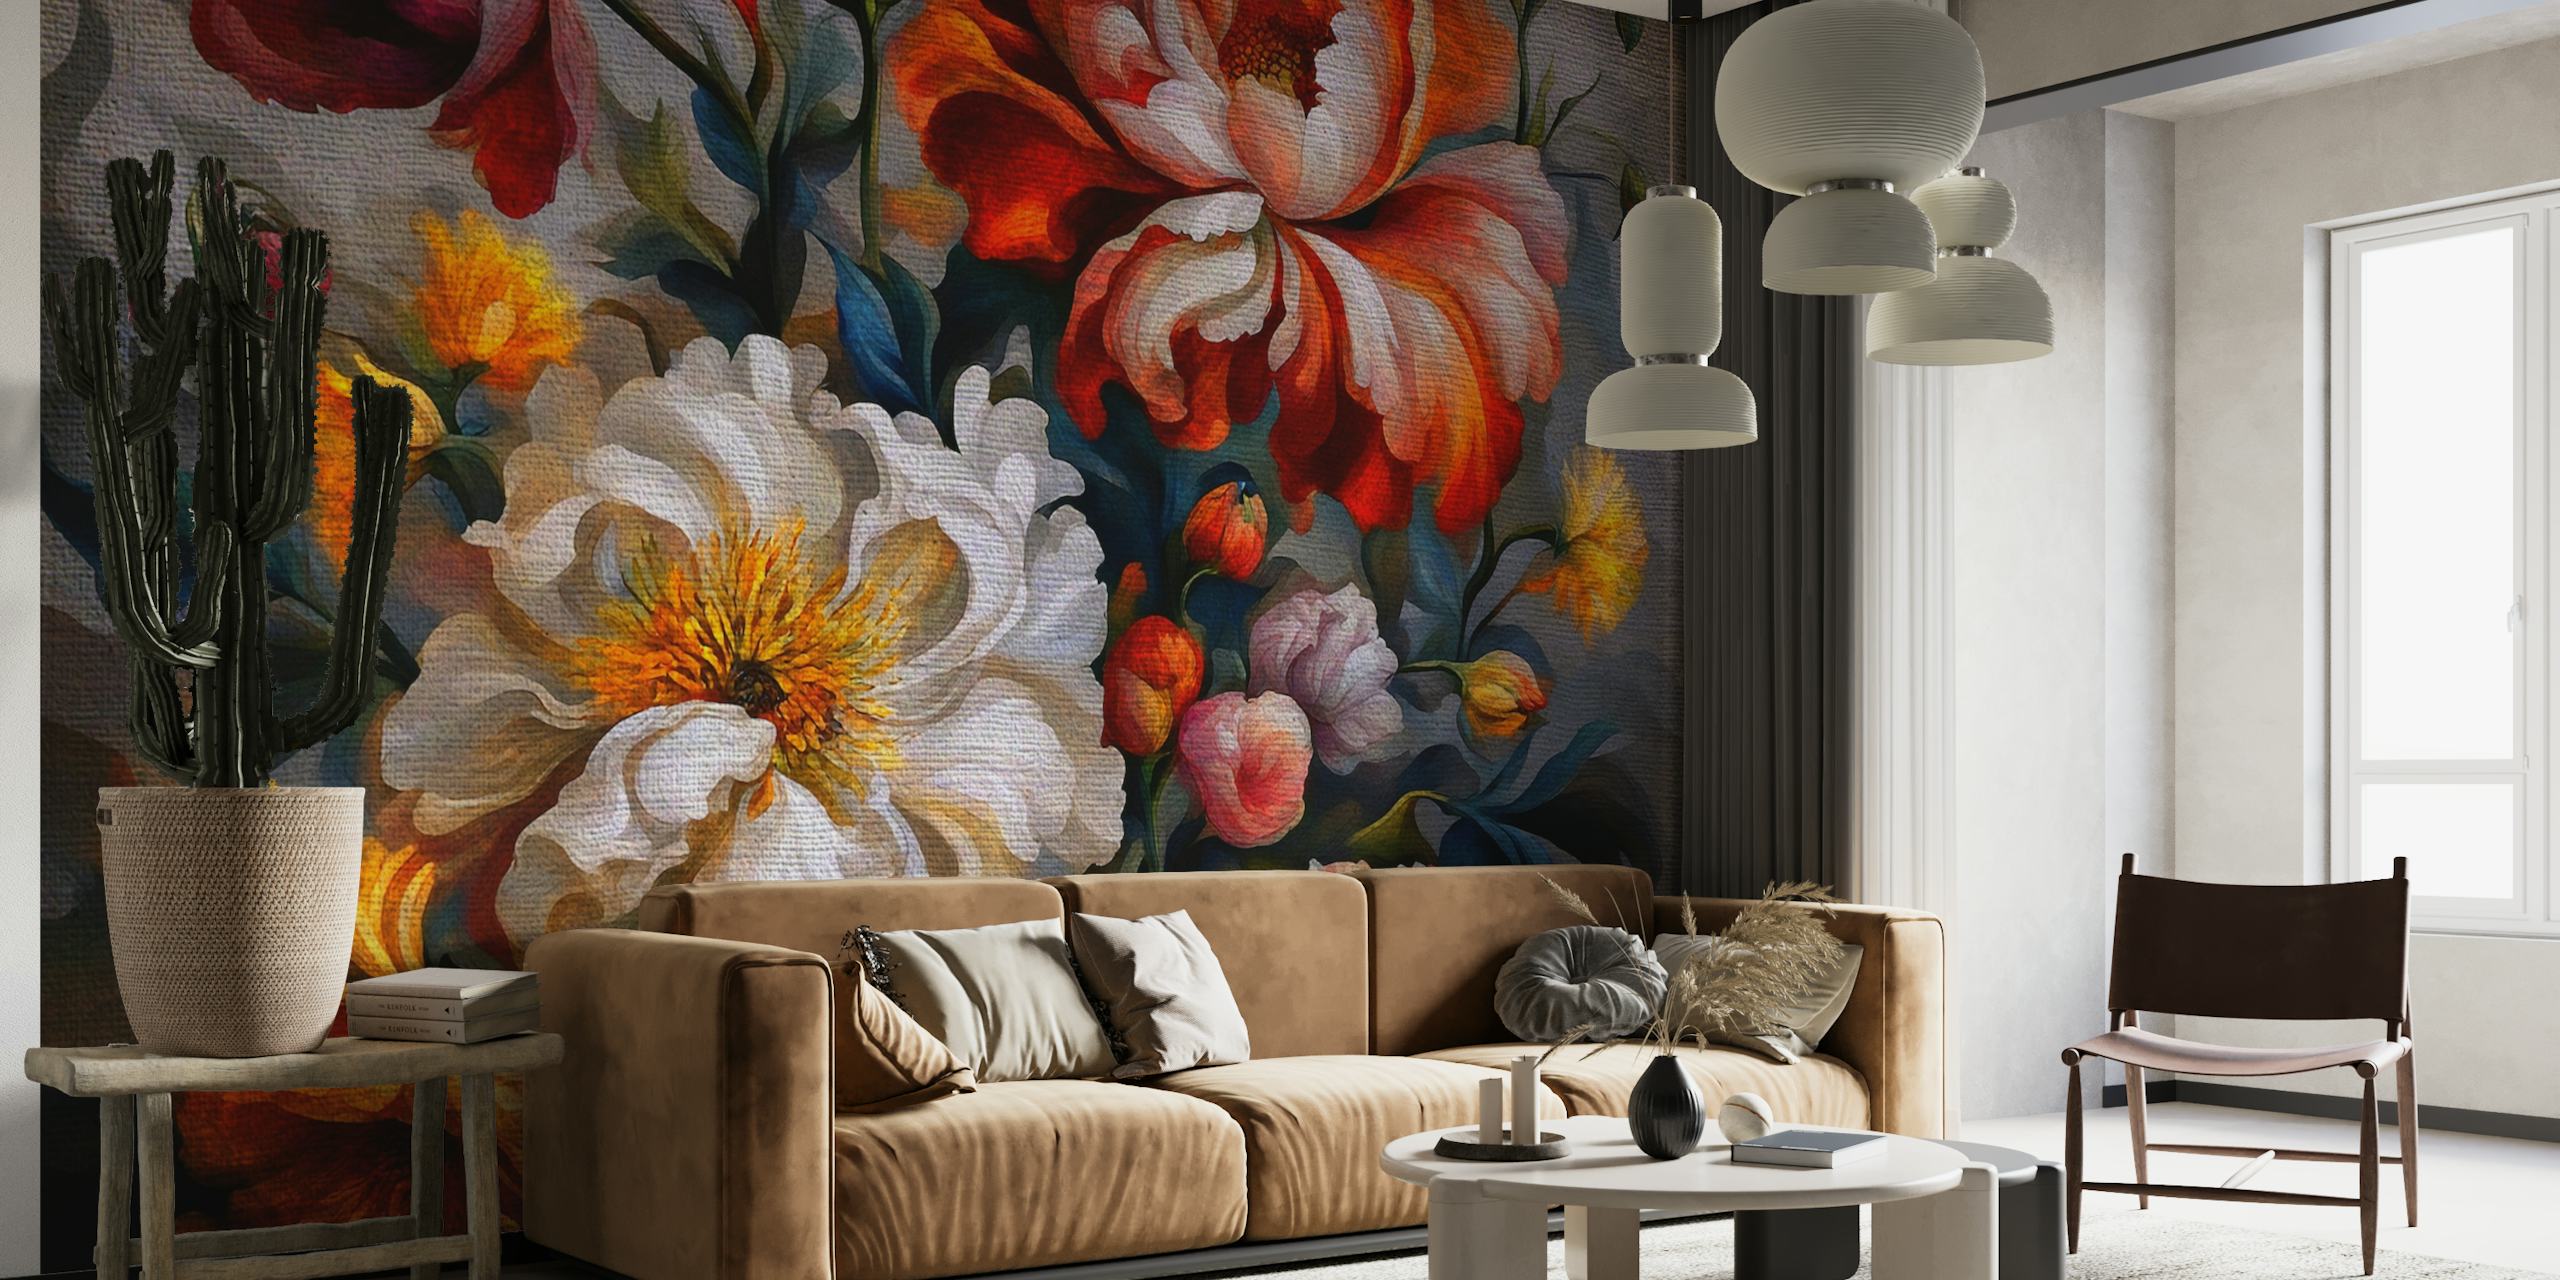 Bloemenmuurschildering in barokstijl op een humeurige donkere achtergrond